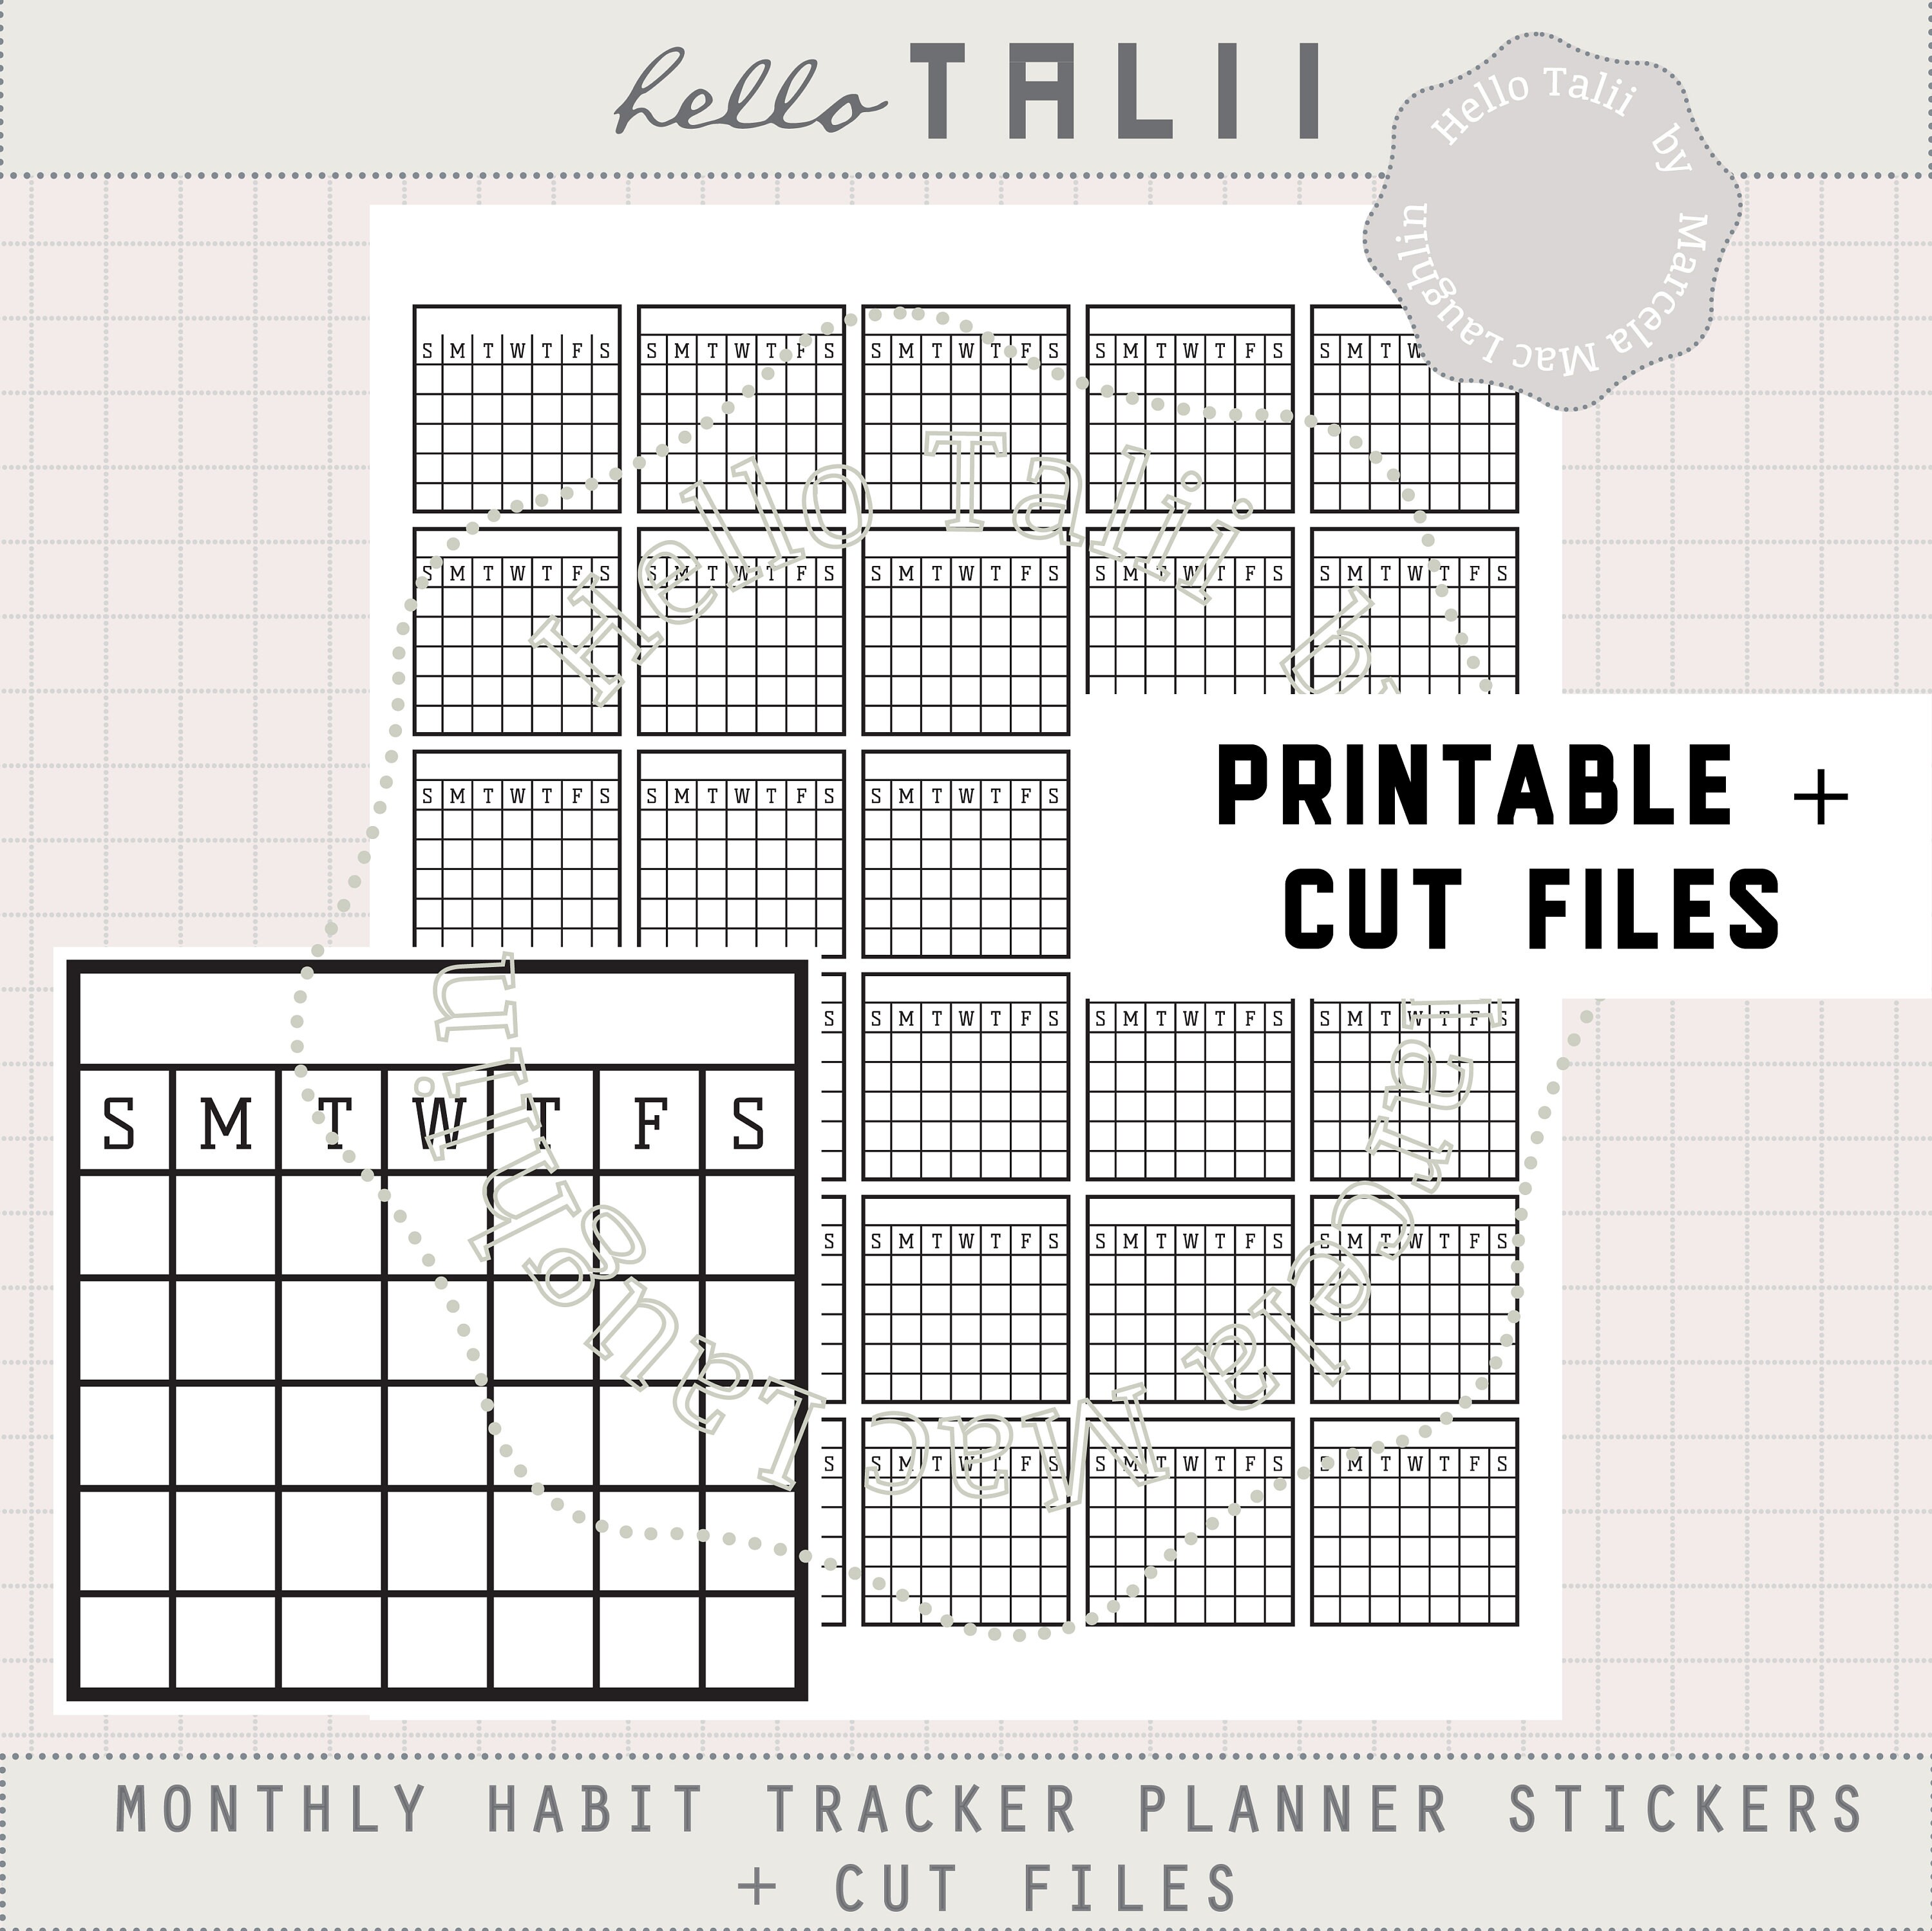 32 Habit Tracker Stickers - Strawberry – Stickers by AshleyK